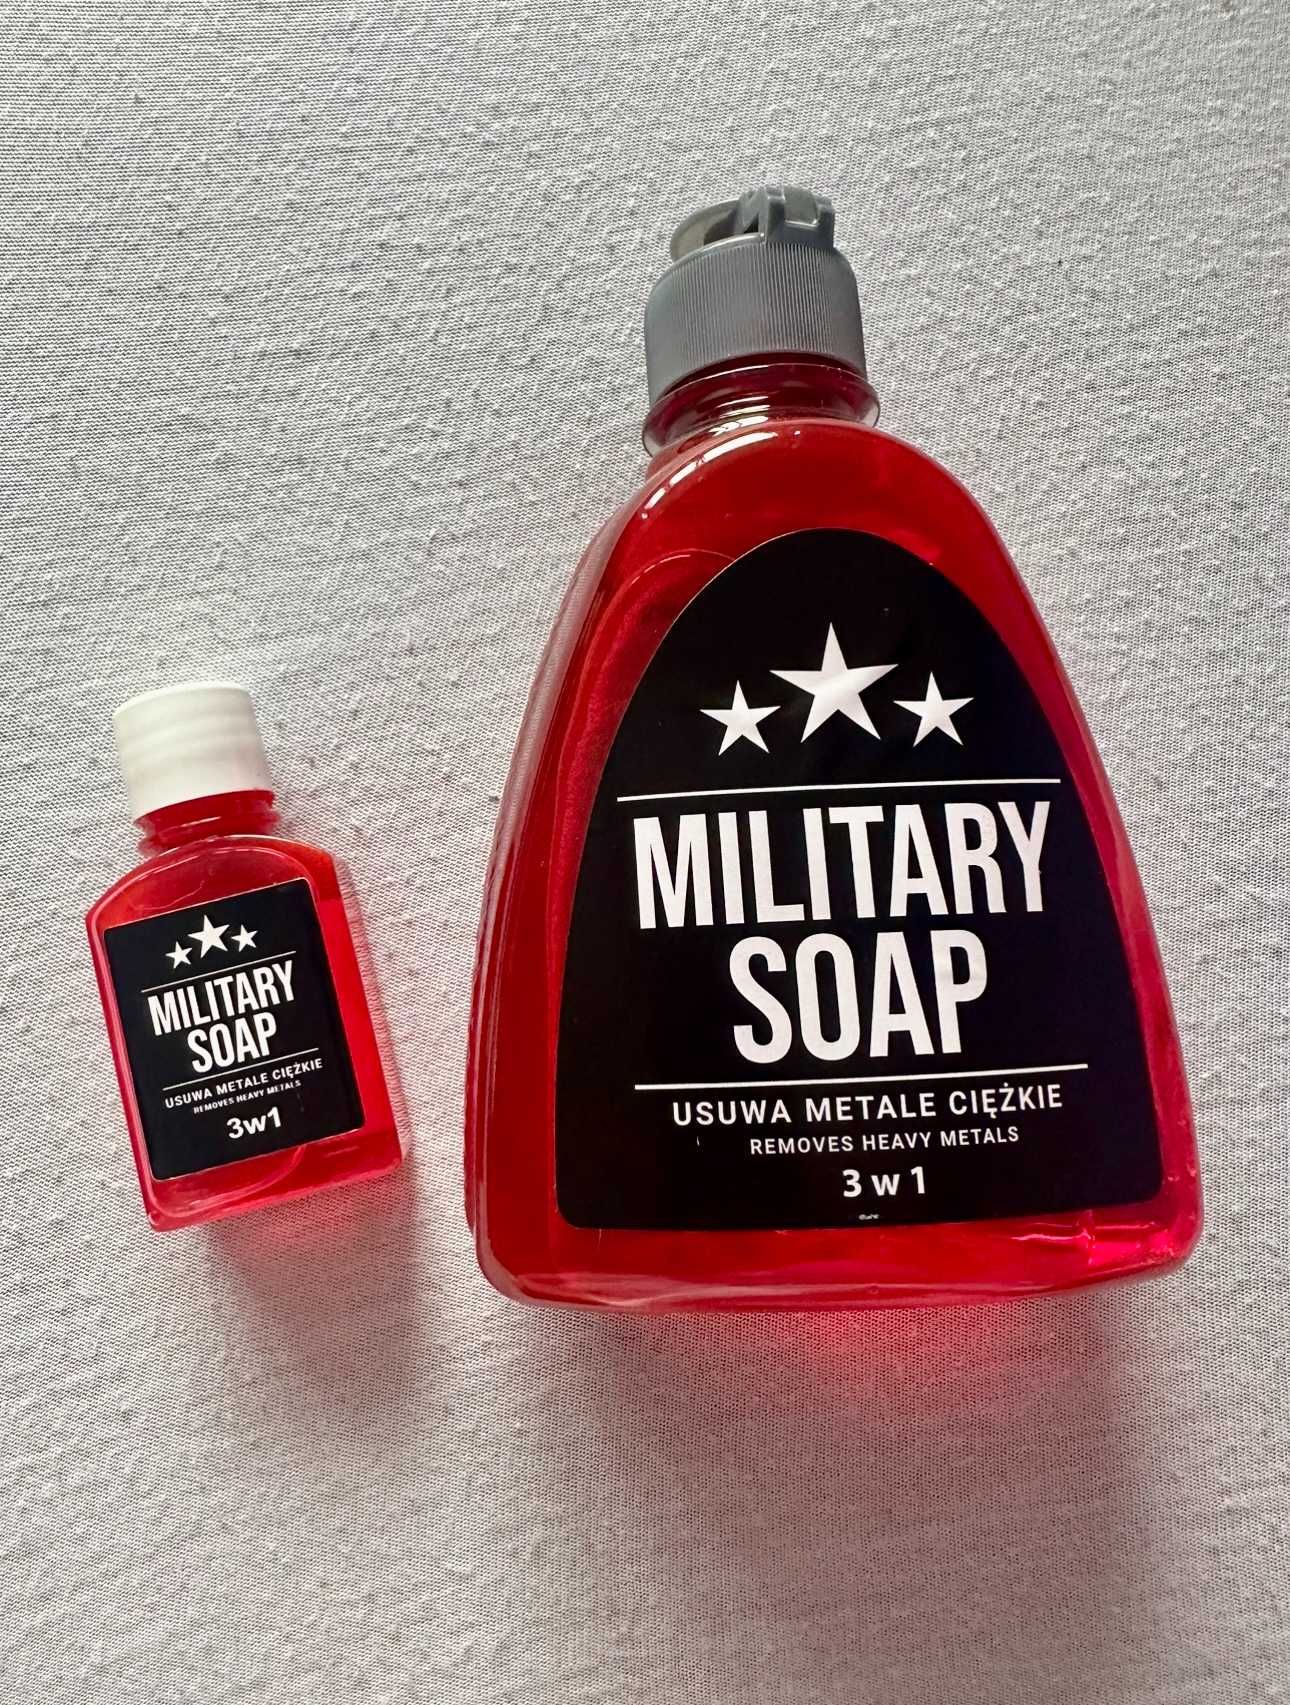 NOWE Mydło 3w1 Military Soap 0,3l do zabrudzeń ciężkich + GRATIS